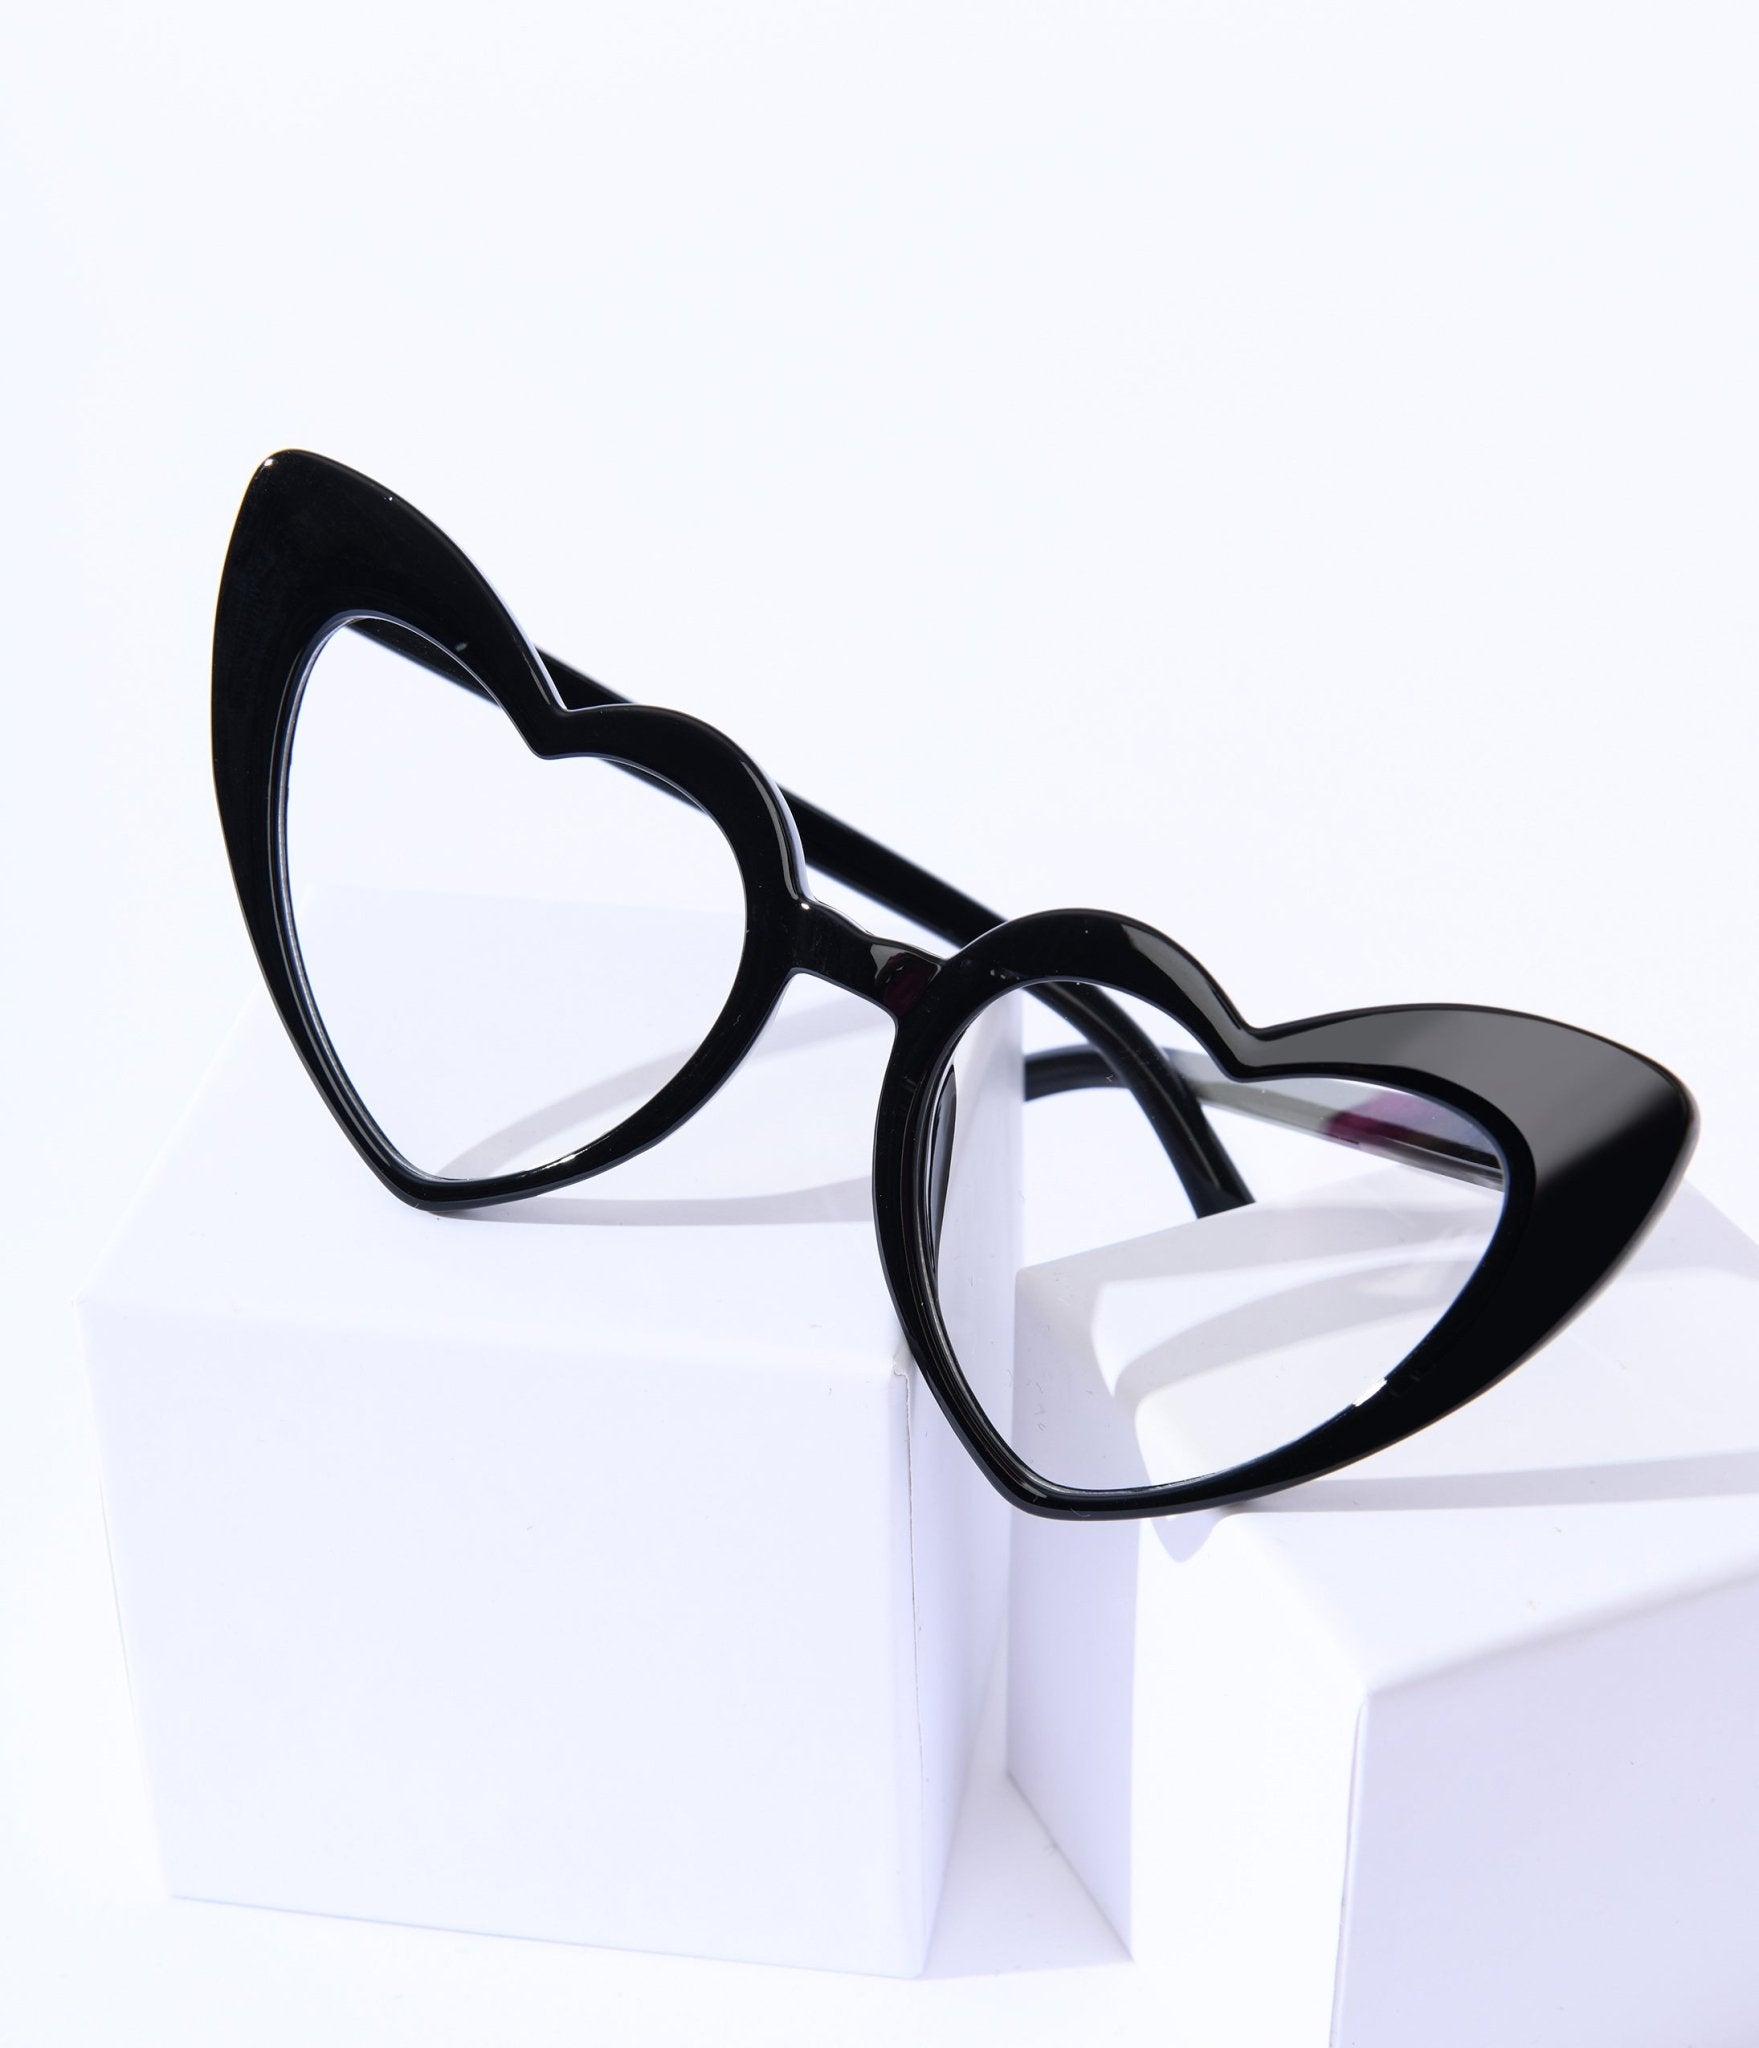 https://www.unique-vintage.com/cdn/shop/products/unique-vintage-black-heart-glasses-684683.jpg?v=1703098855&width=1946